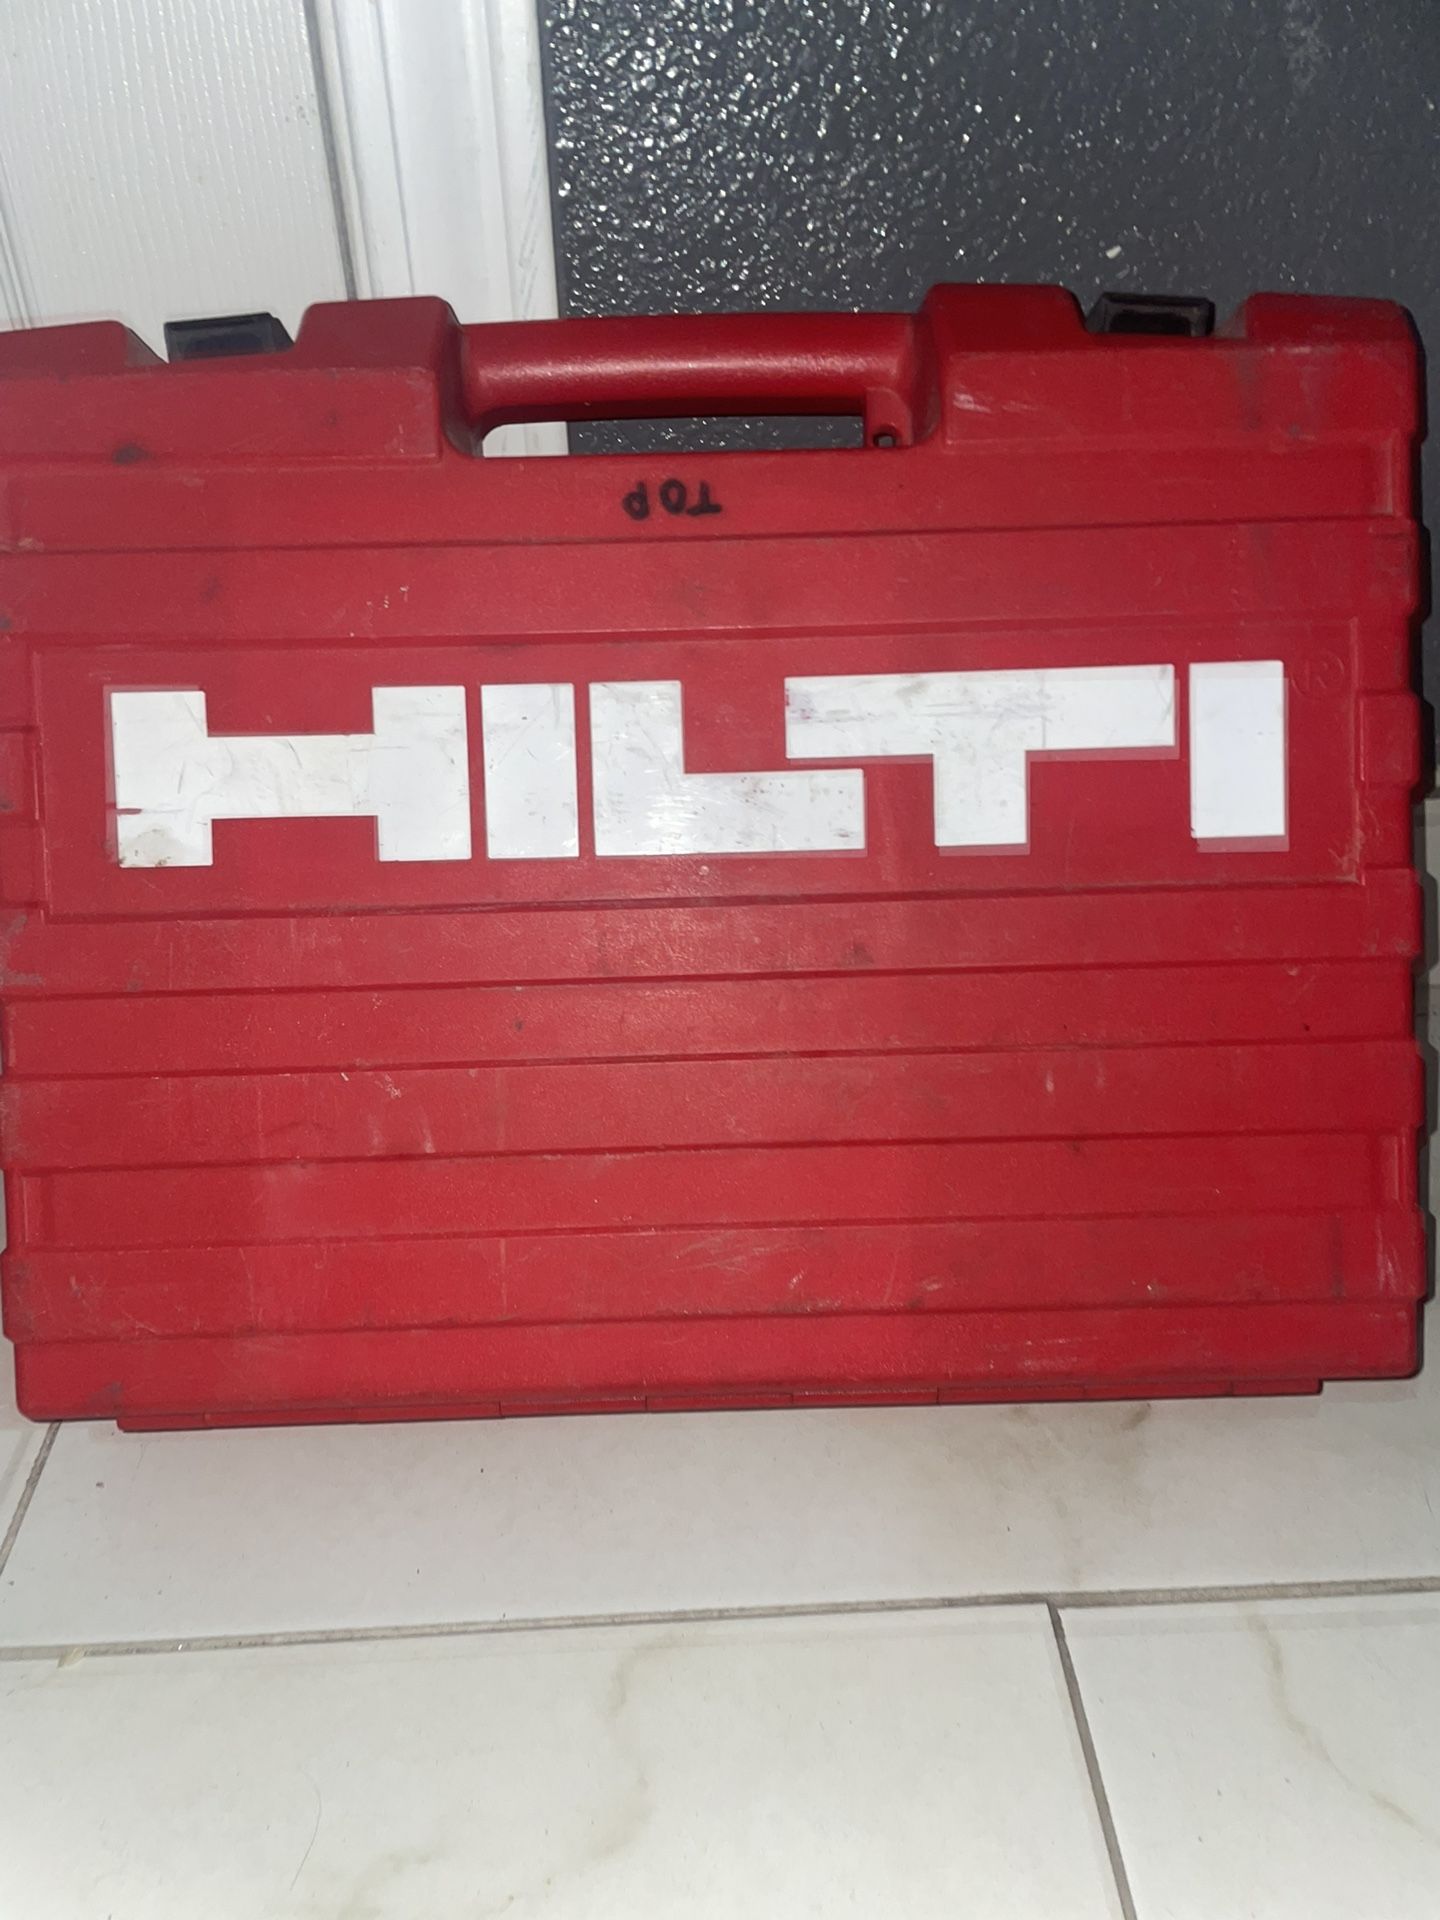 HILTI TE 2-S Concrete DRILL in CASE